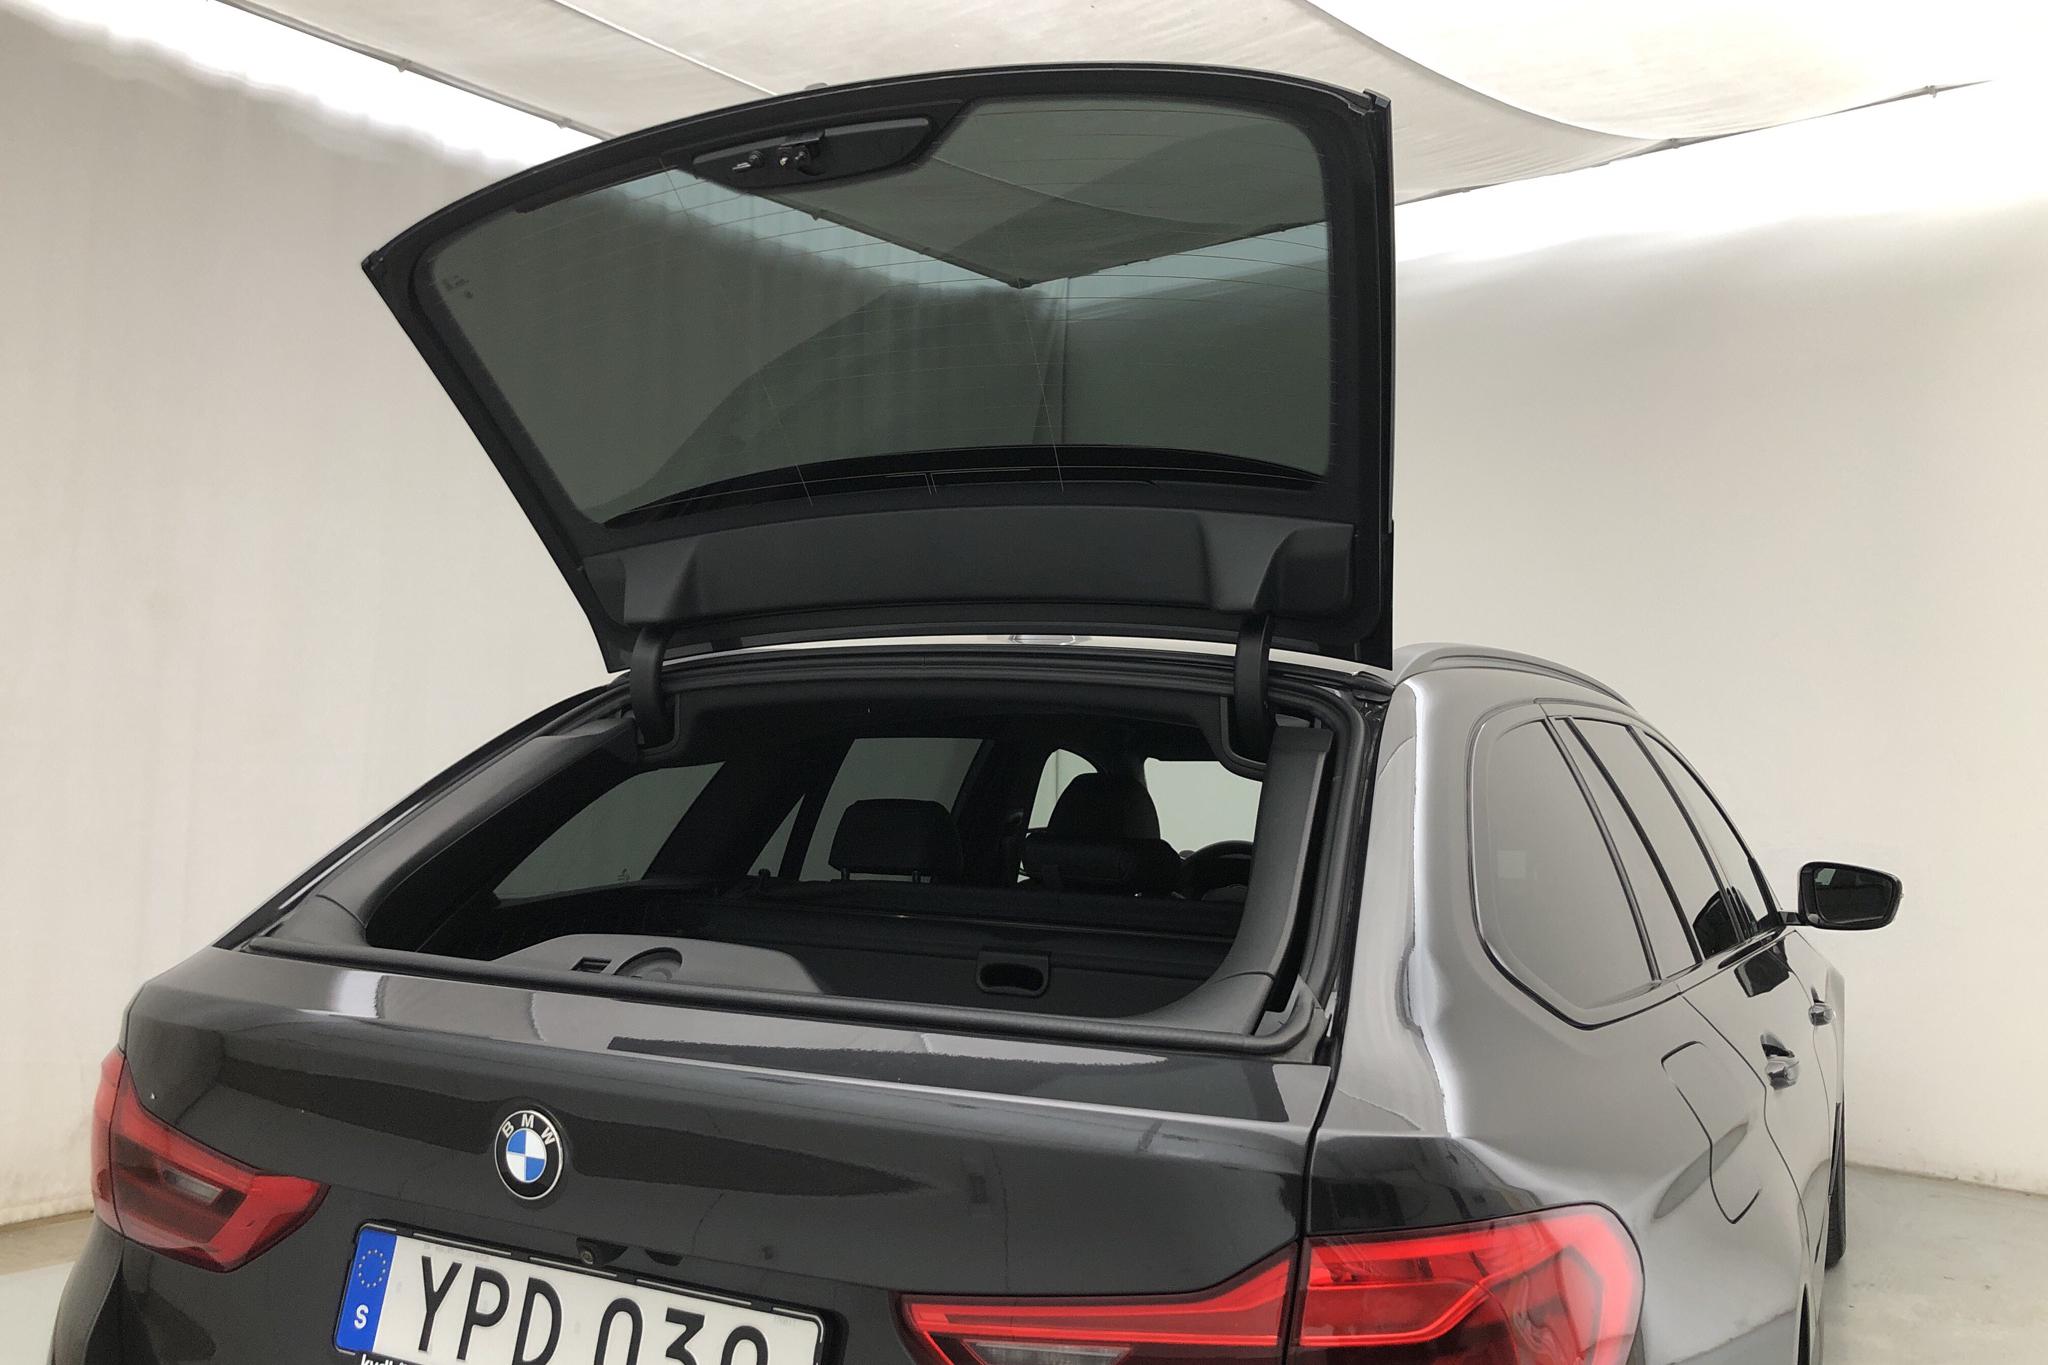 BMW 520d xDrive Touring, G31 (190hk) - 42 080 km - Automatic - gray - 2018